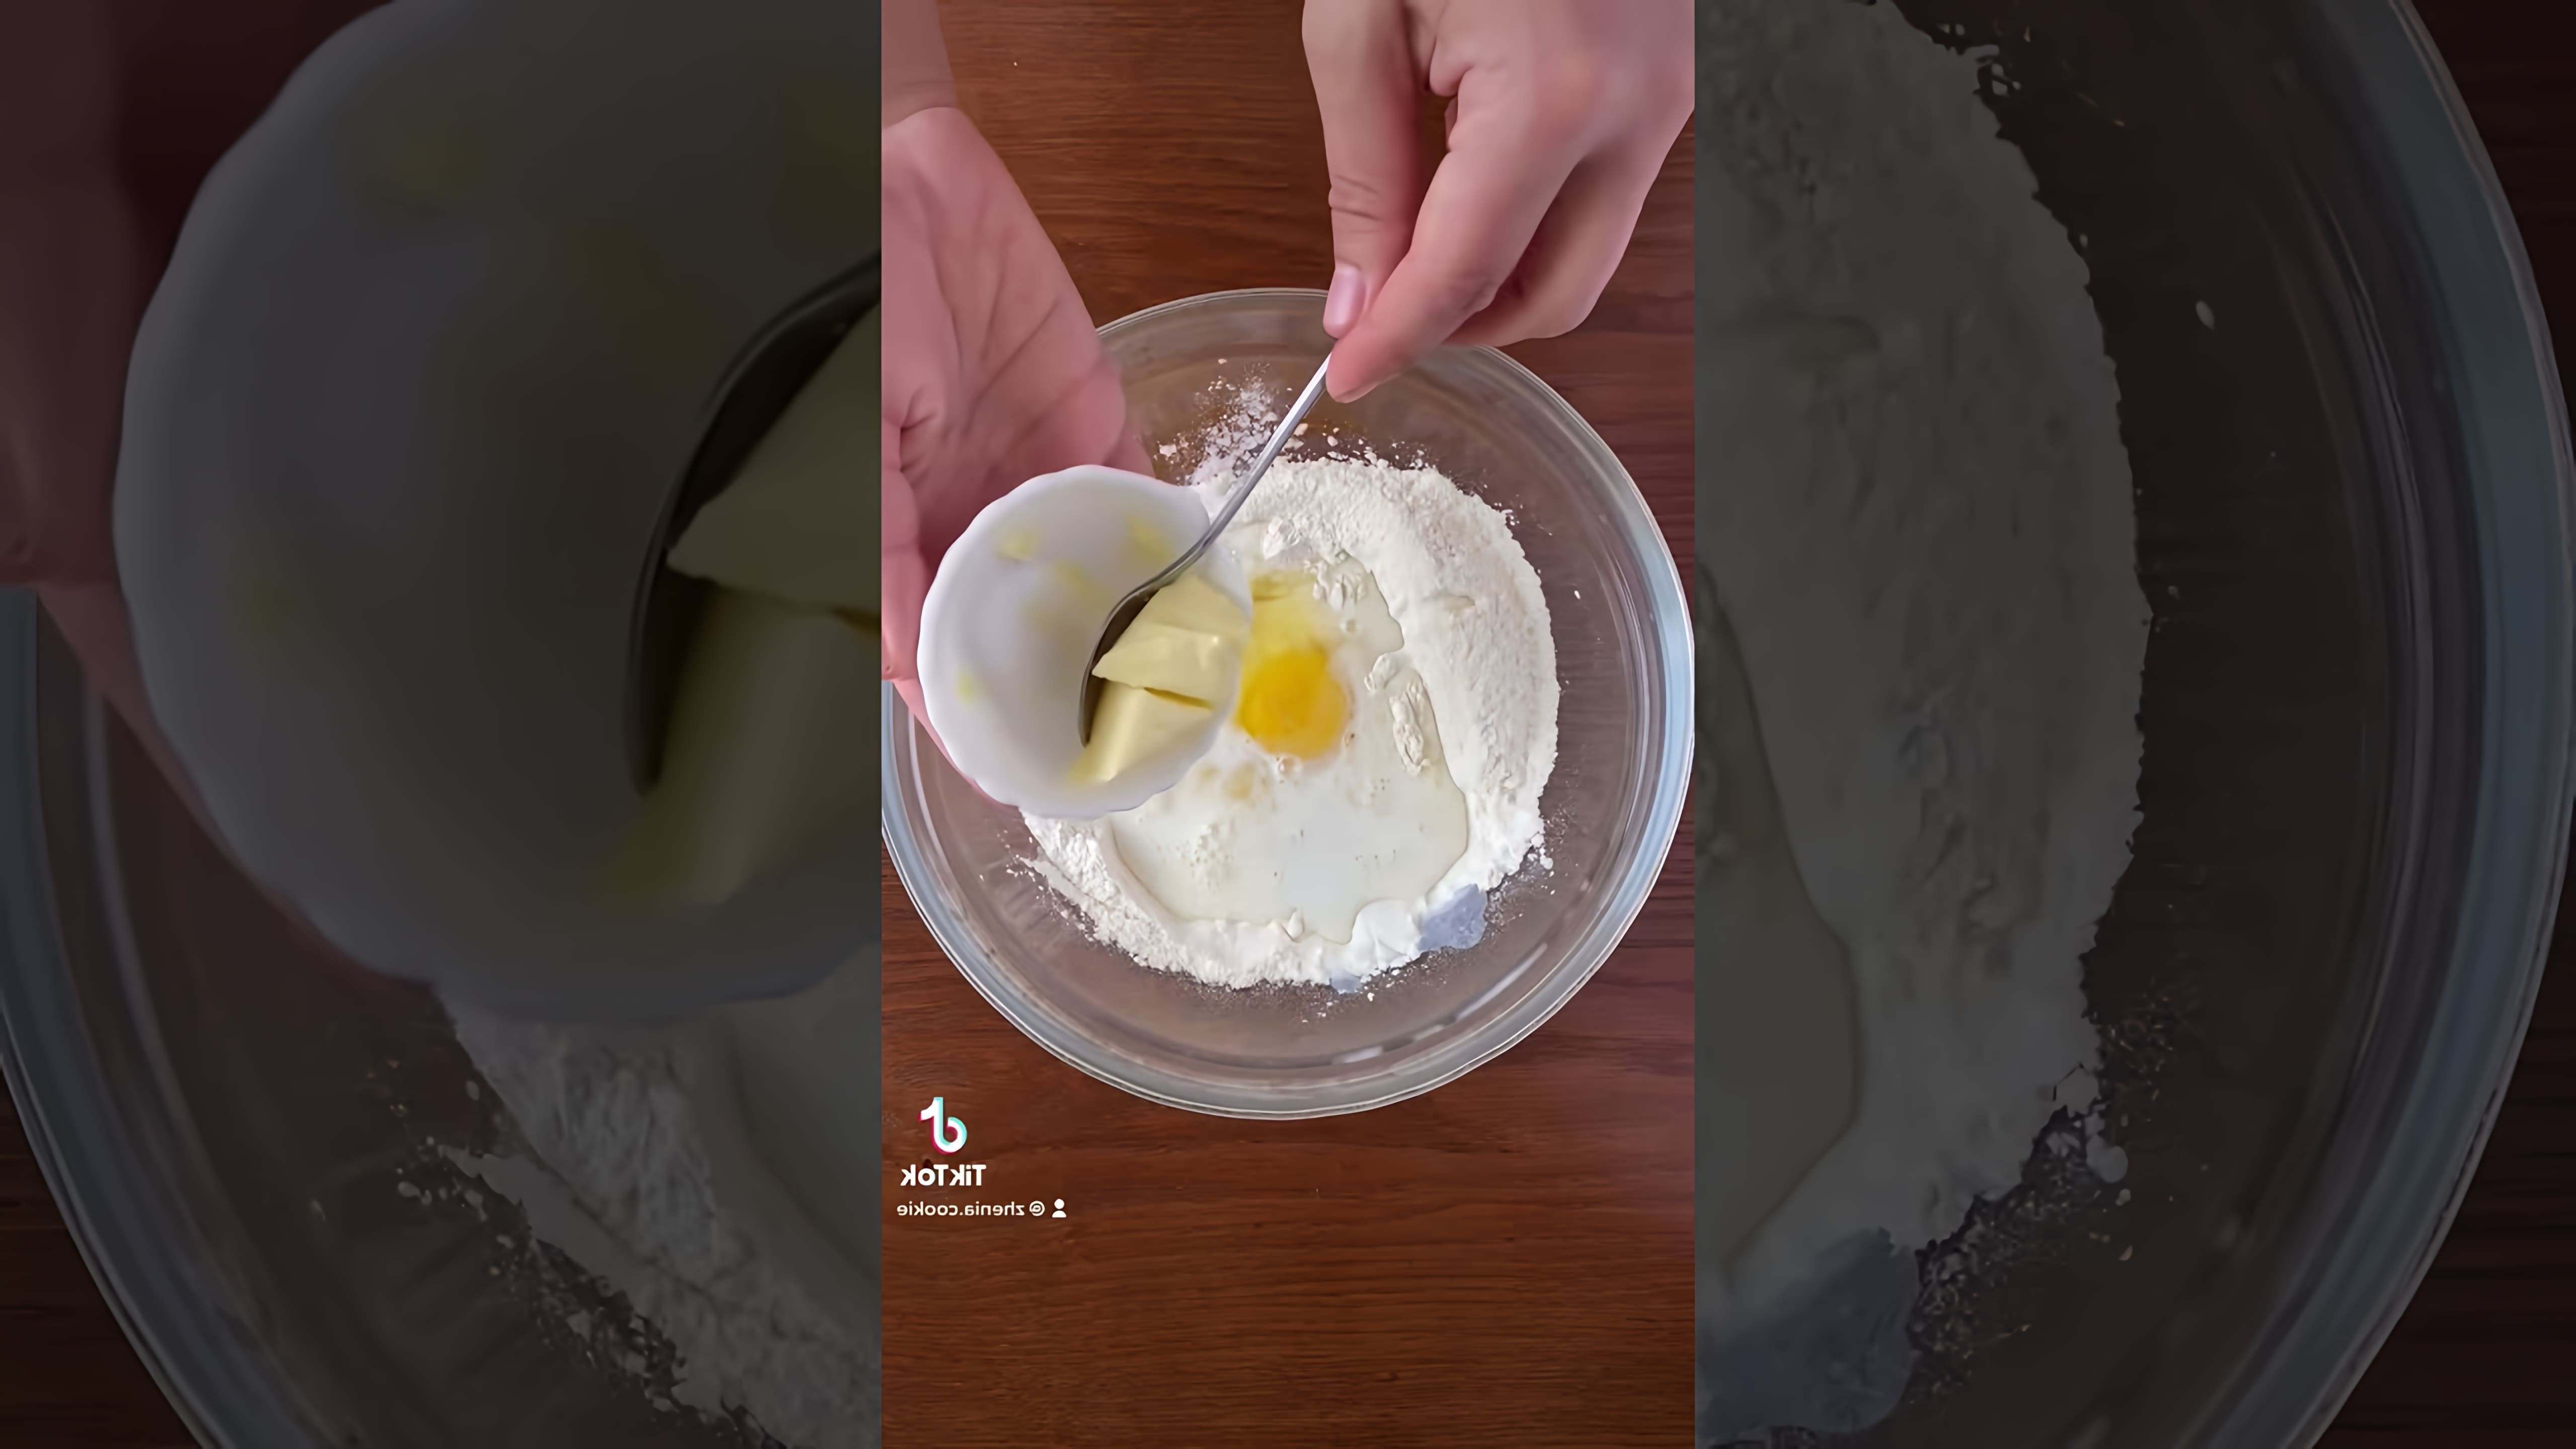 Рецепт сухариков "Хрустим" - это видео-ролик, который демонстрирует процесс приготовления вкусных и хрустящих сухариков в домашних условиях